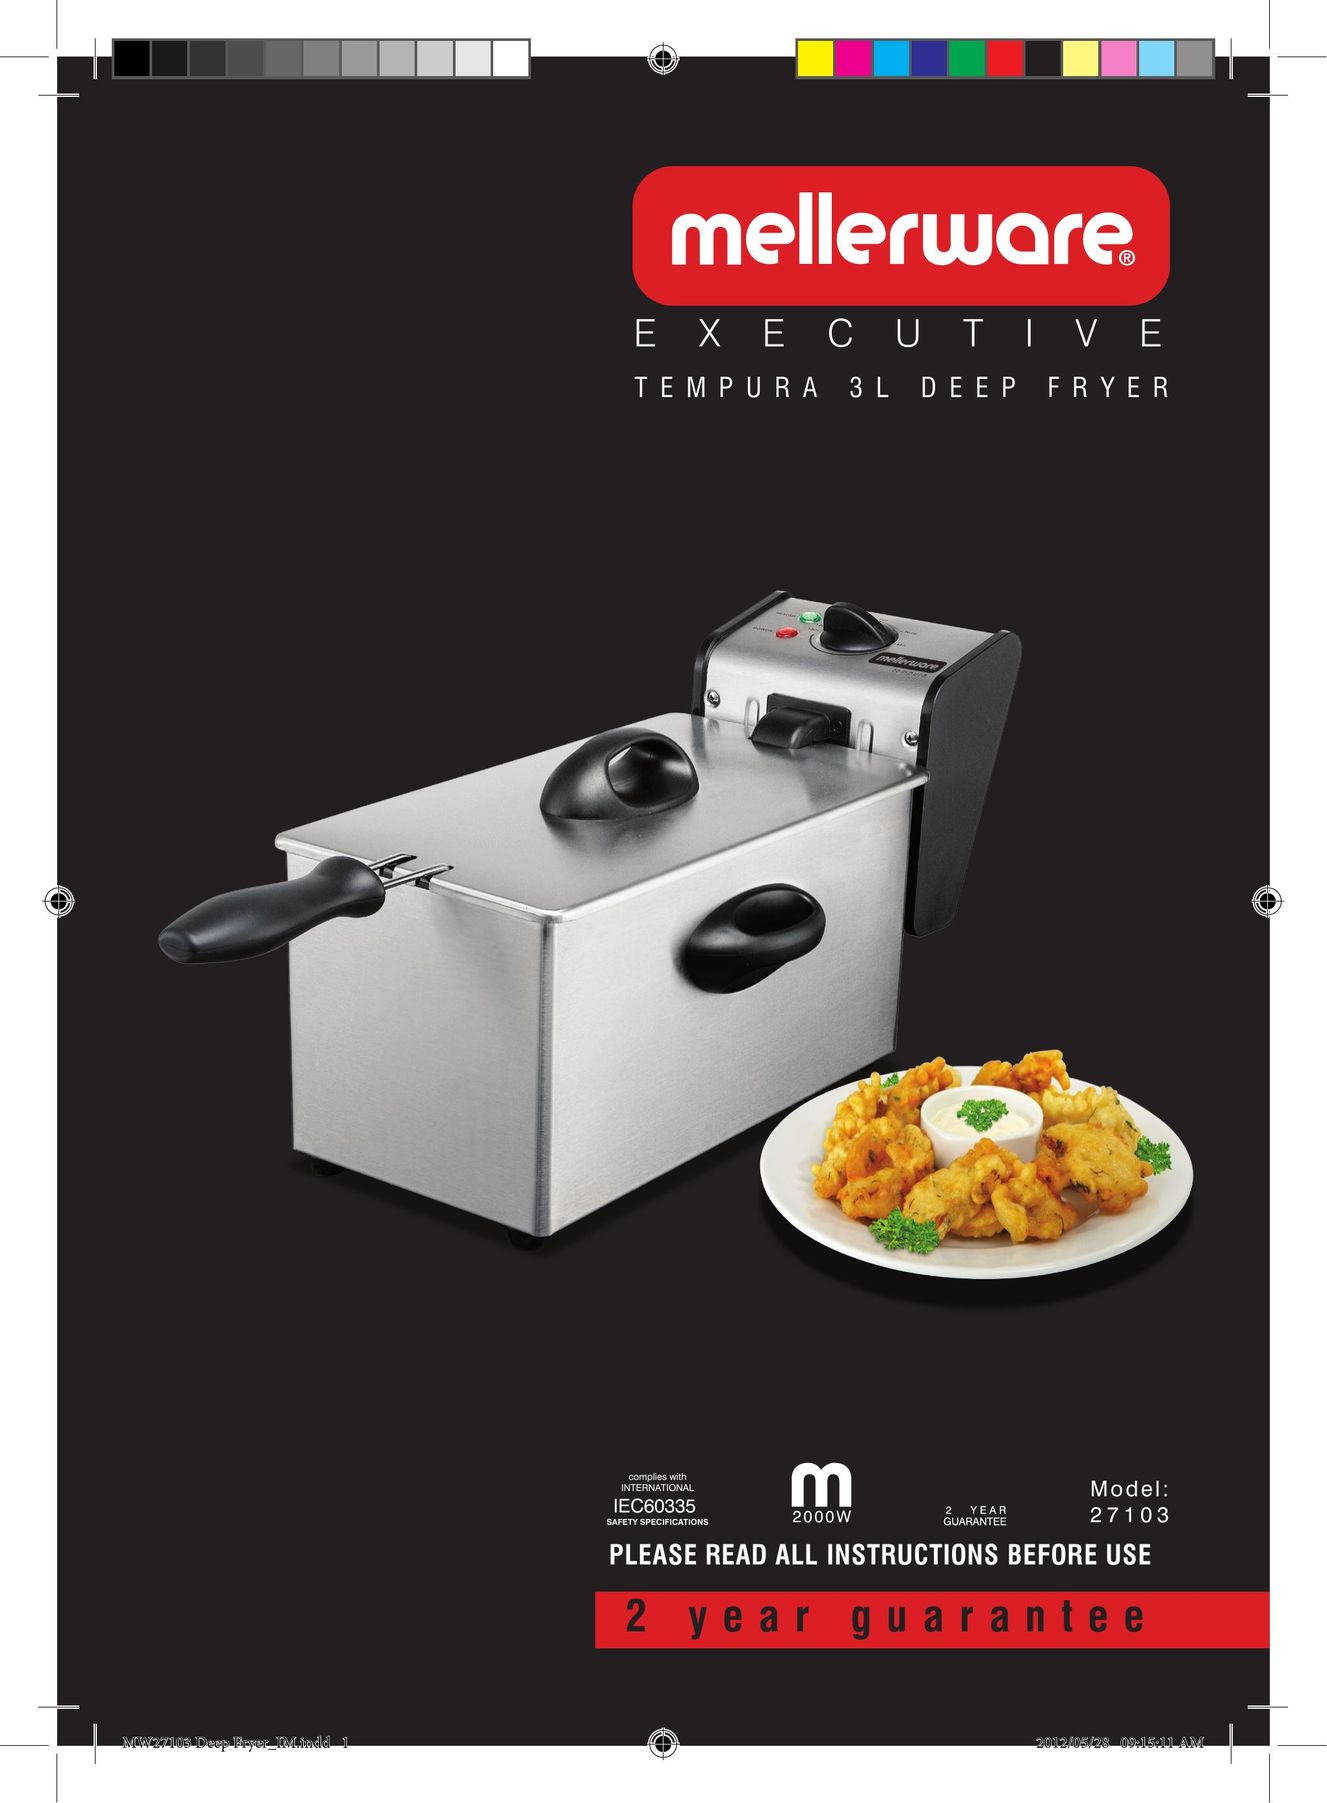 Mellerware 27103 Fryer User Manual